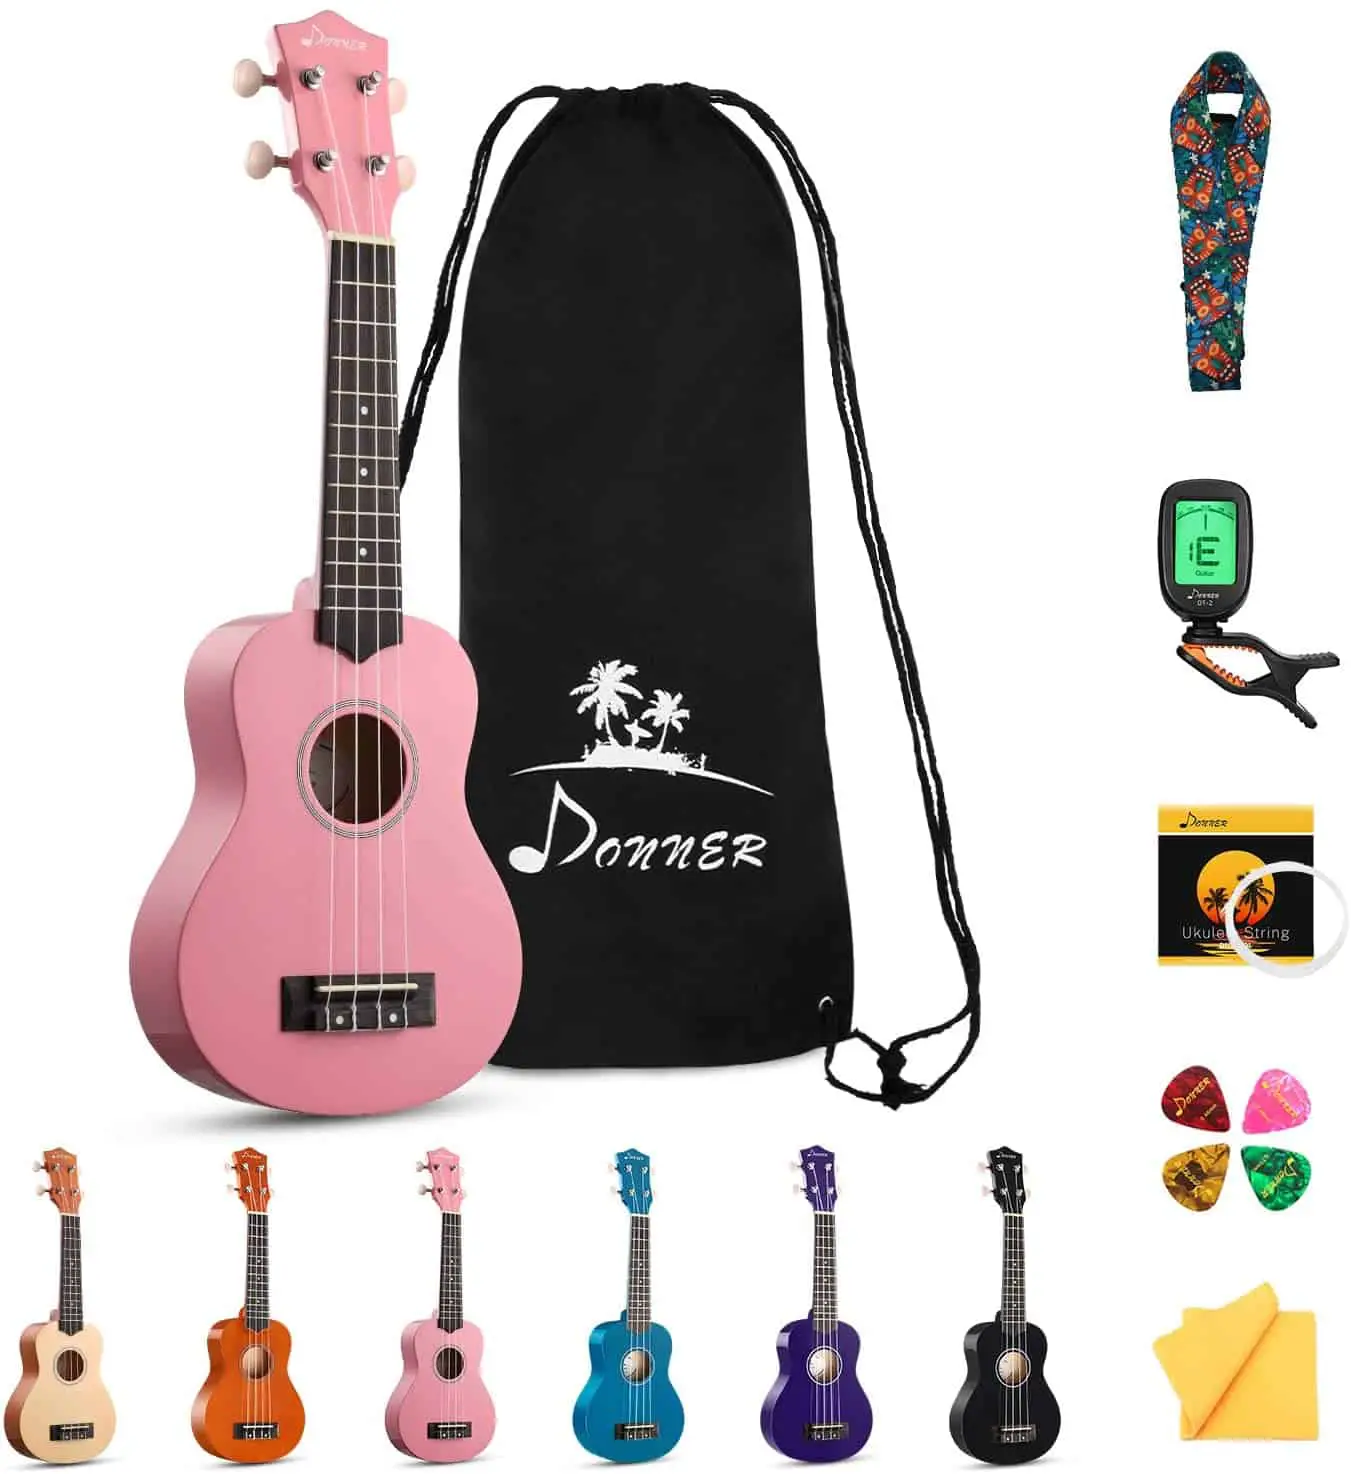 Najbolja ukulela za djecu: Donner Soprano Beginner Kit DUS 10-K